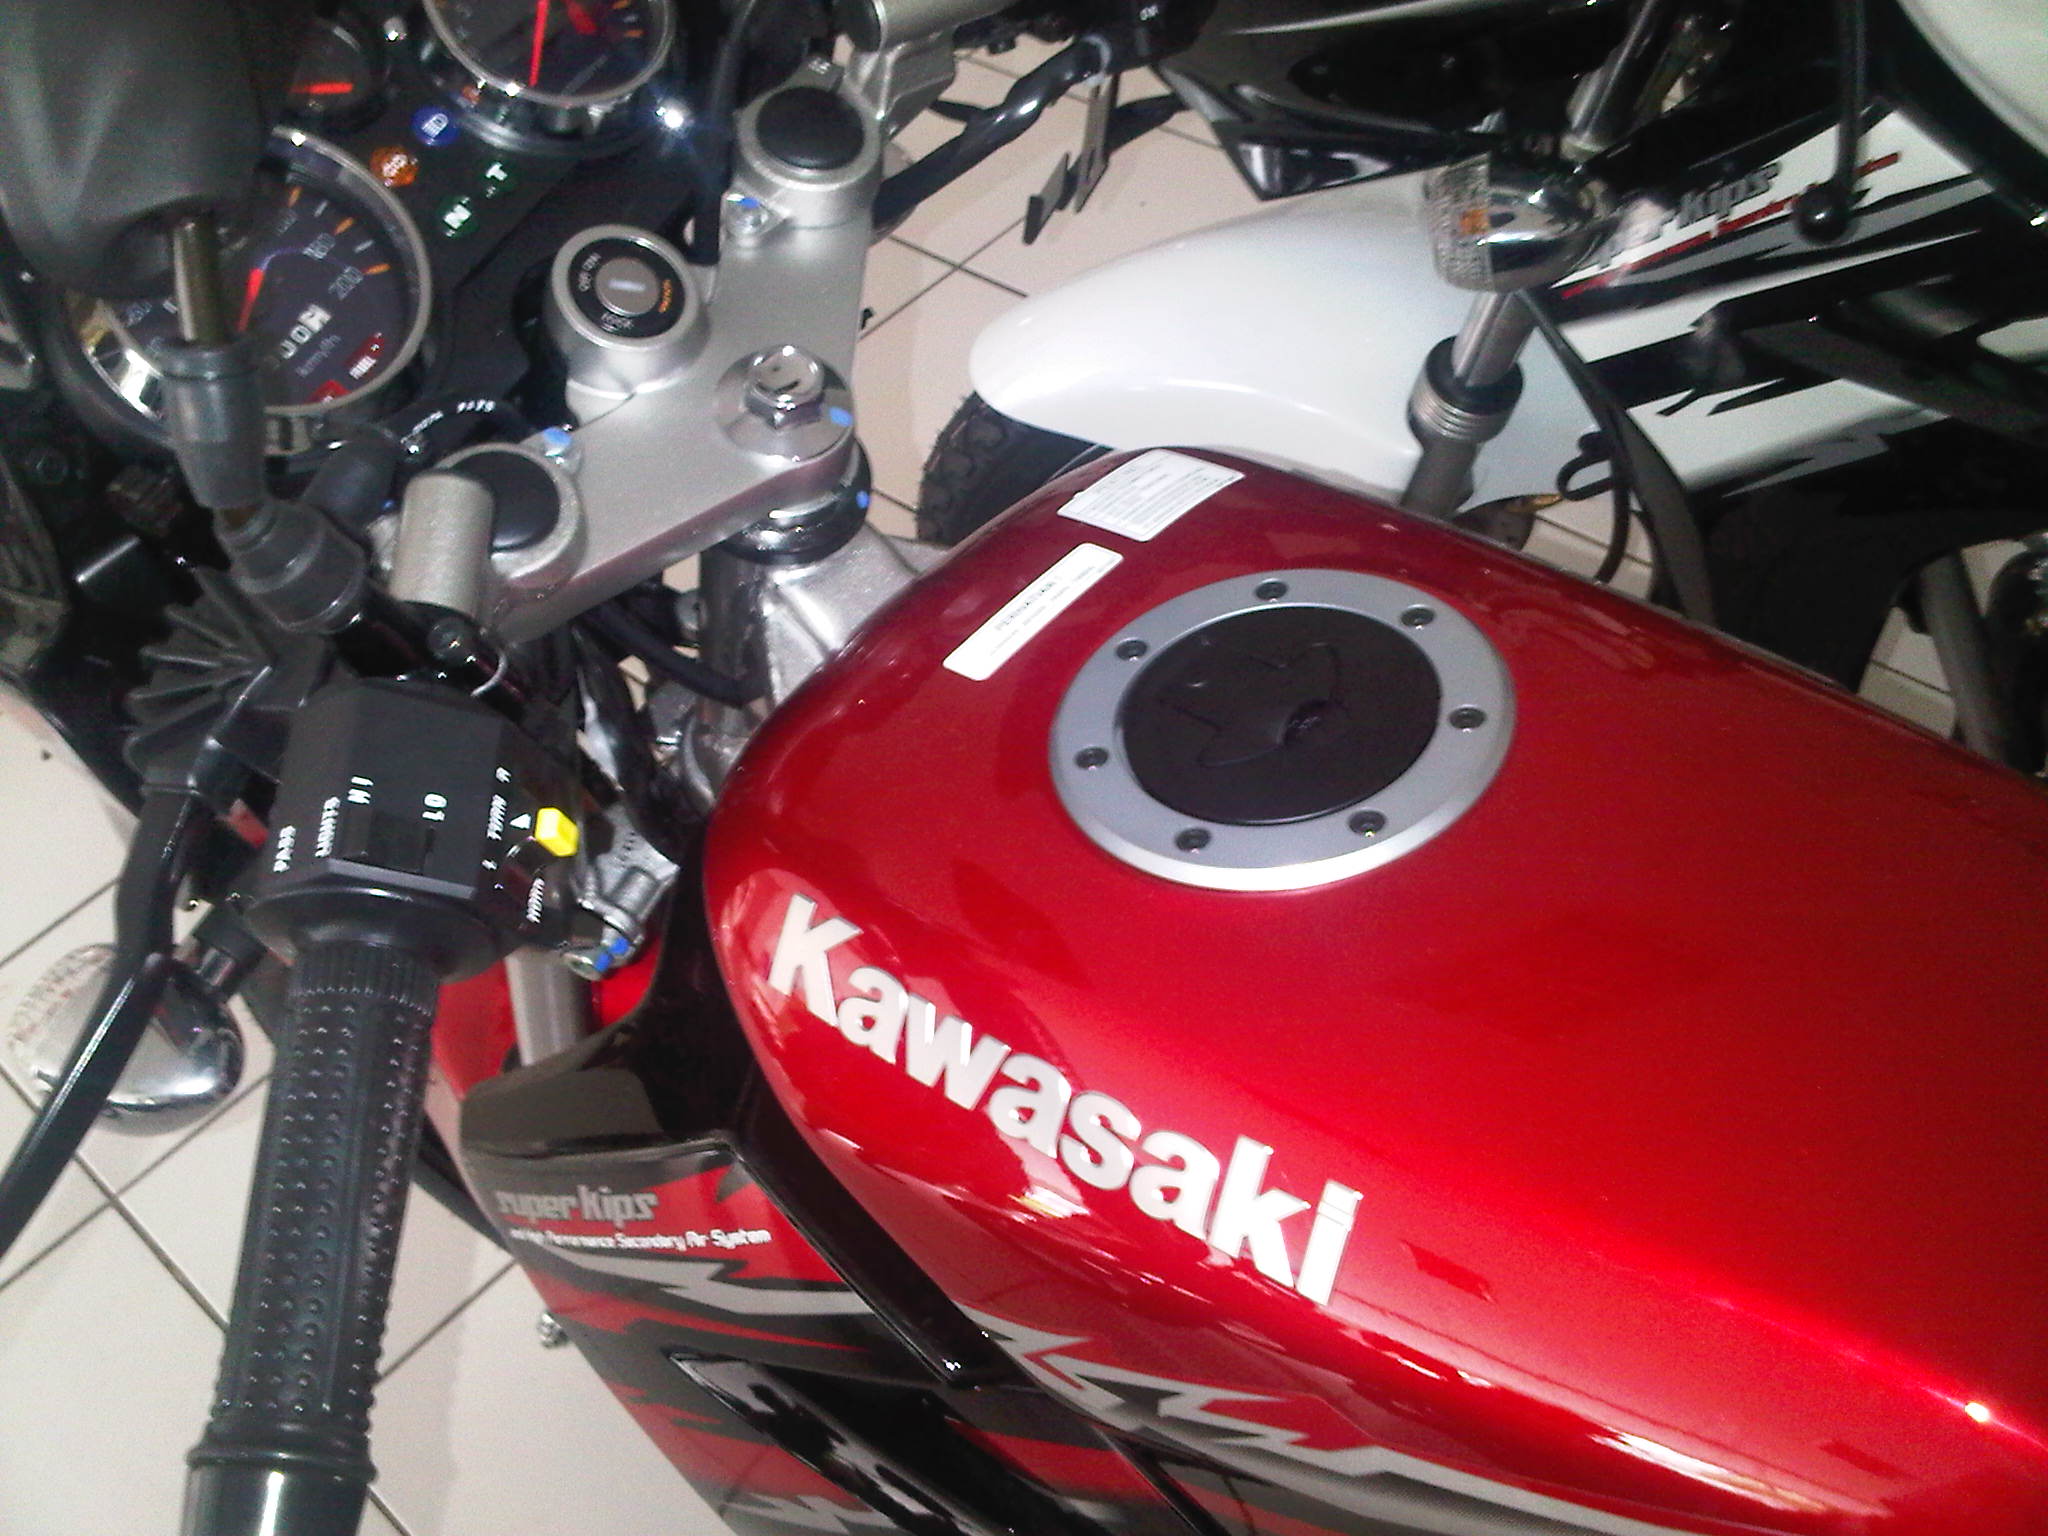 Foto Kawasaki Ninja 150 L Merah Red Ivancad